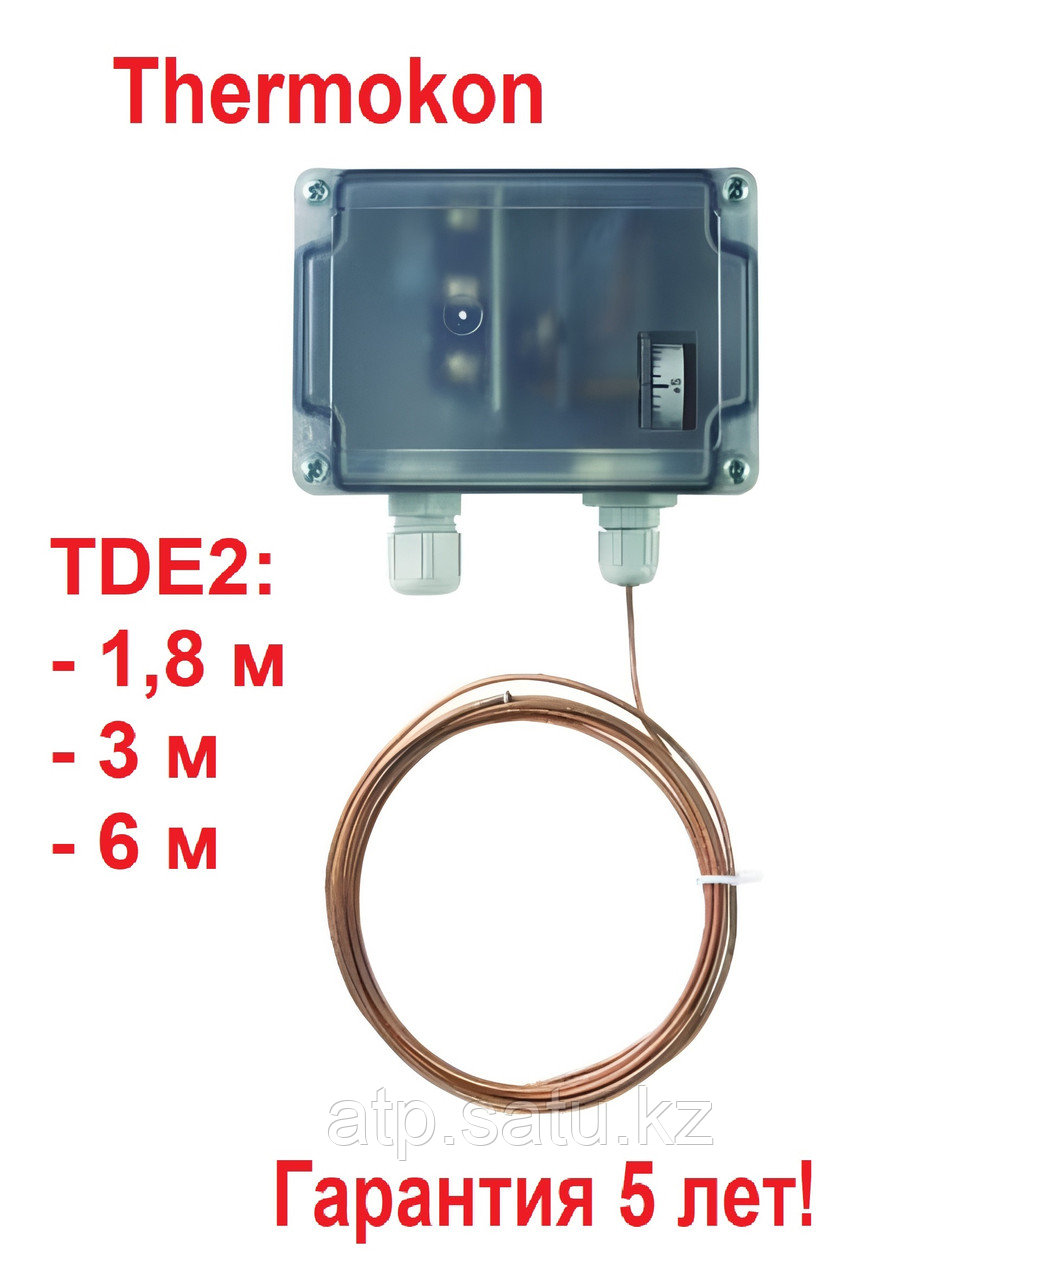 Термостат защиты от замерзания TDE2 длиной 1,8 метра